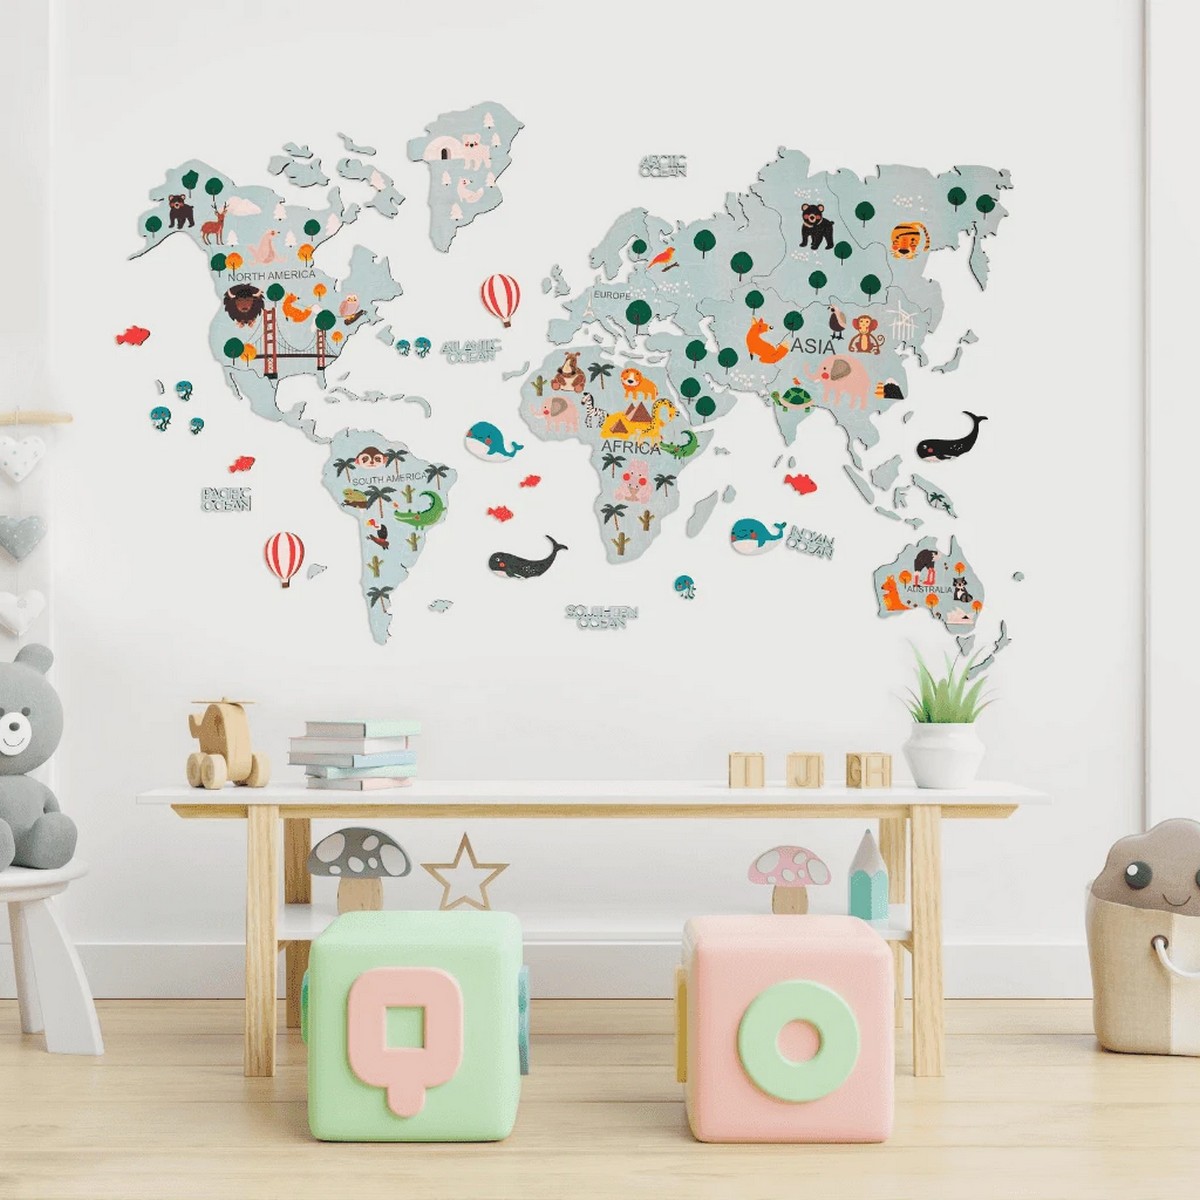 детская деревянная 2d карта мира на стене